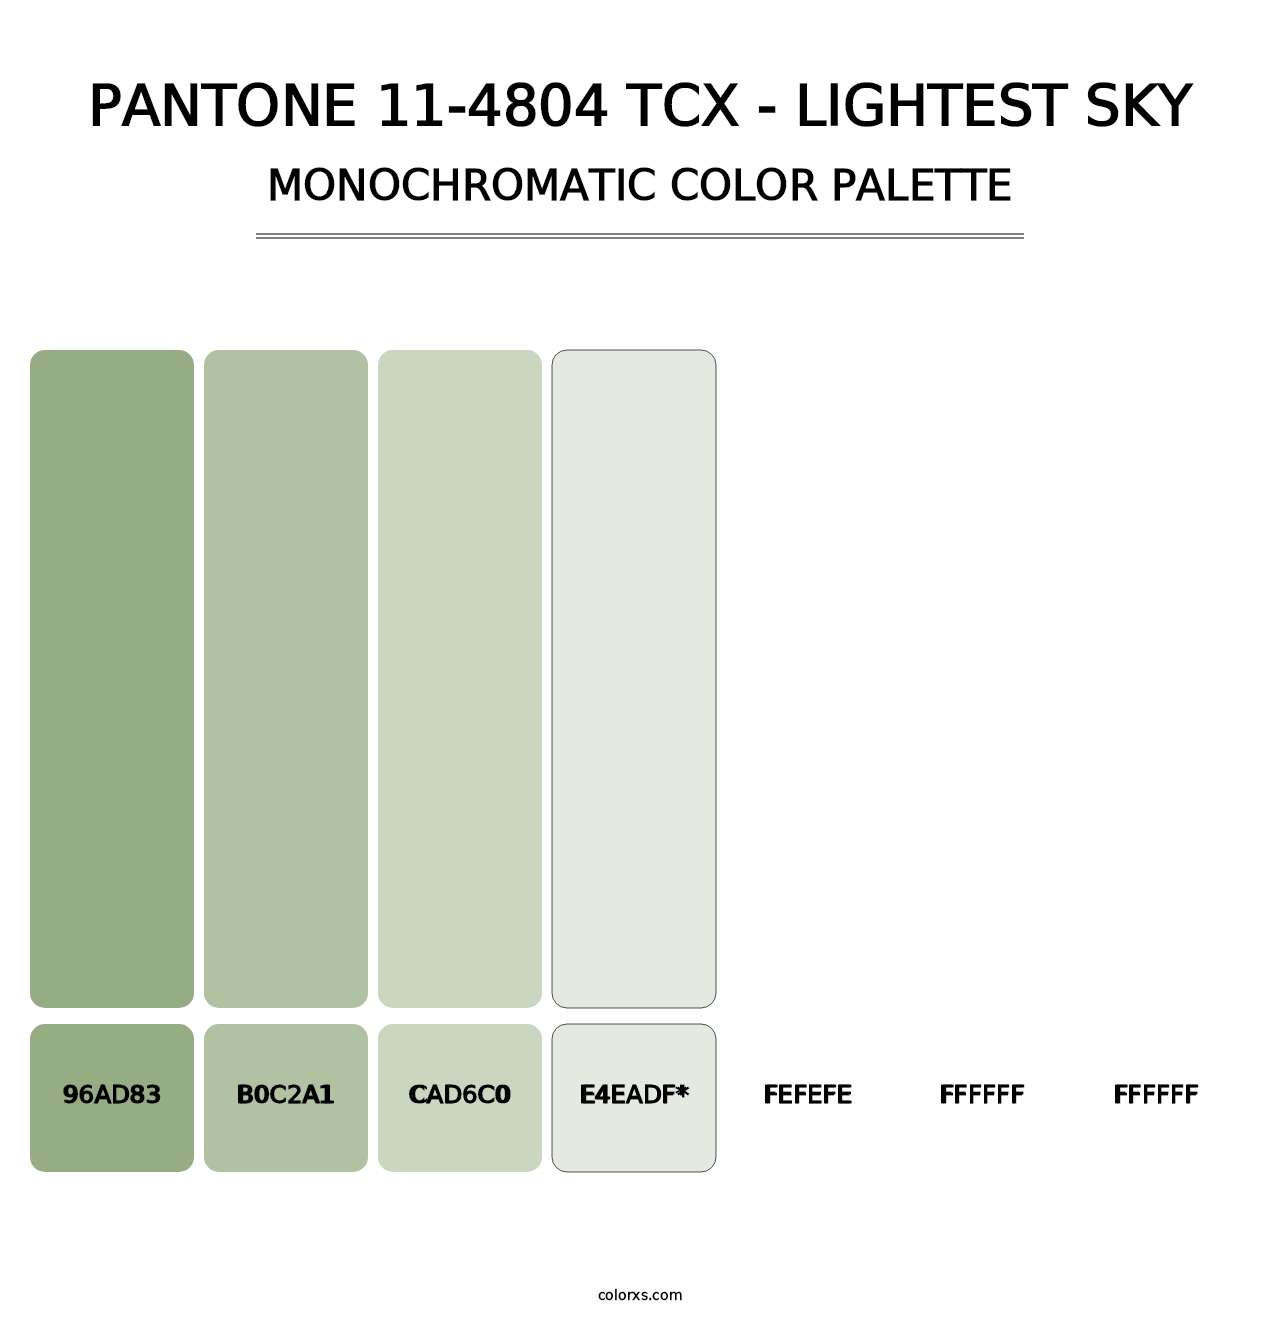 PANTONE 11-4804 TCX - Lightest Sky - Monochromatic Color Palette